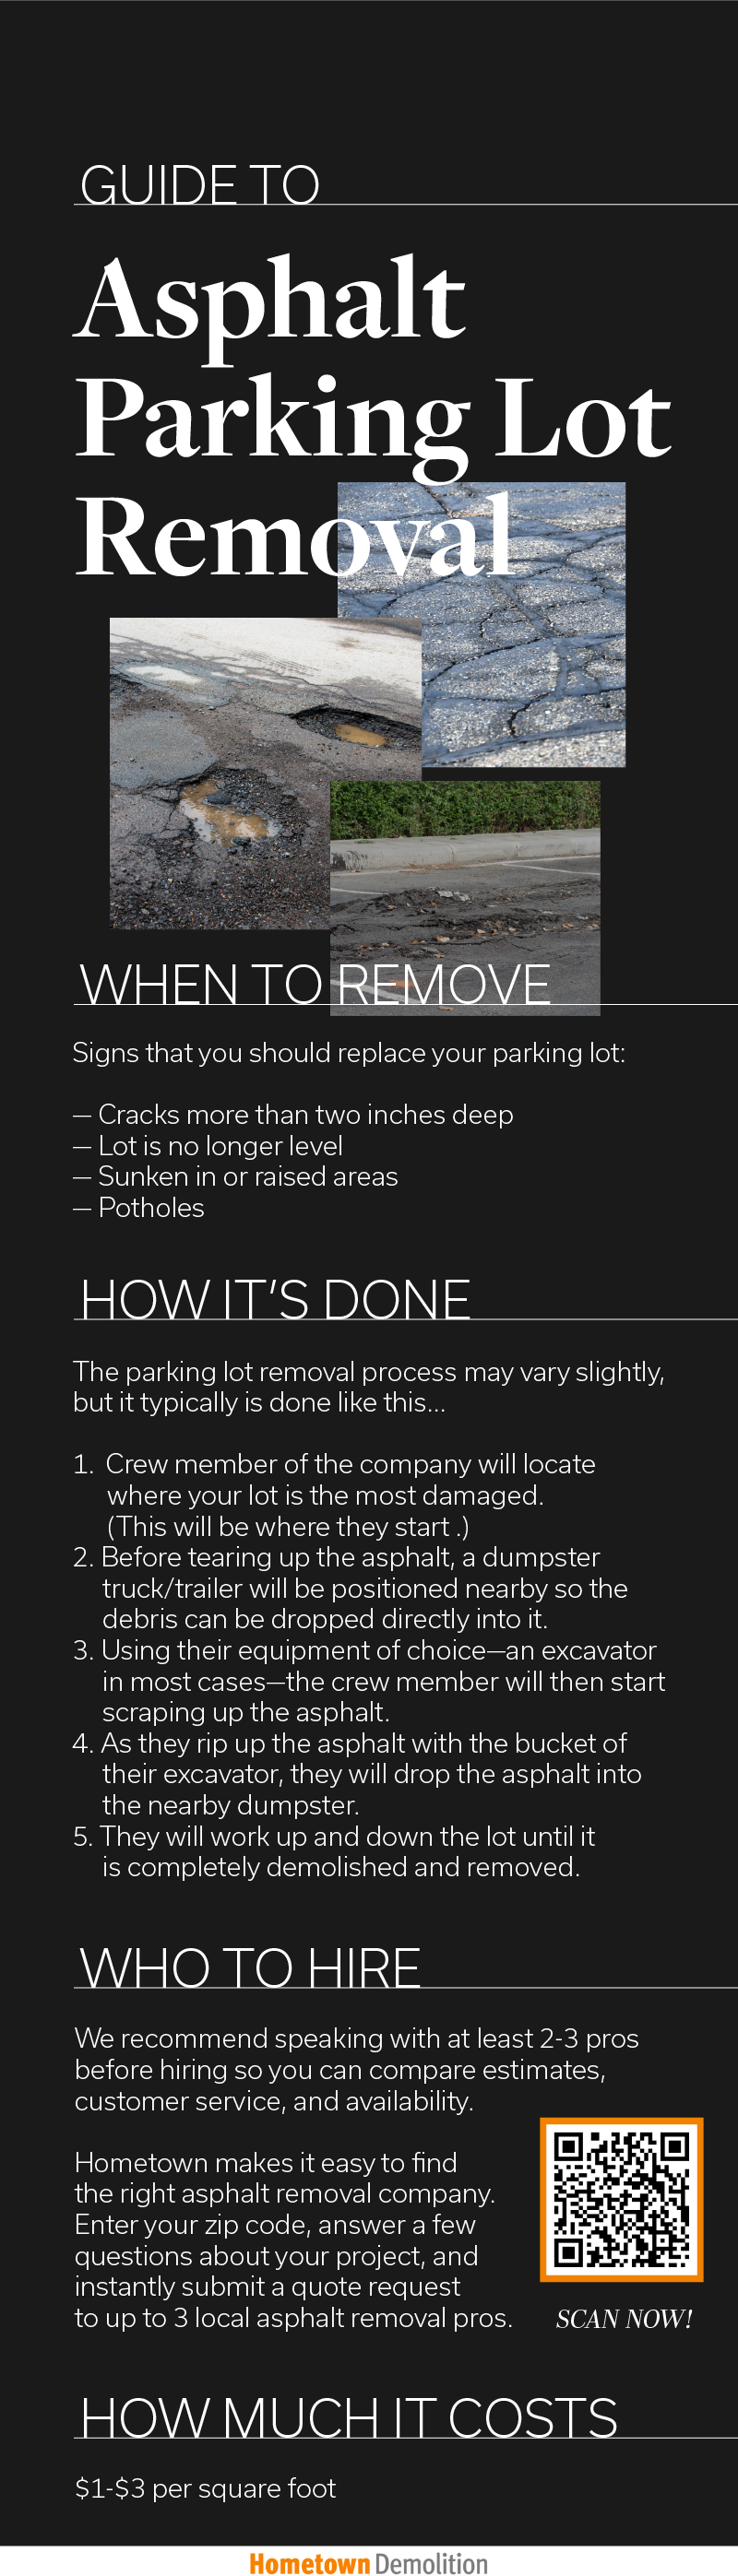 asphalt parking lot removal infographic